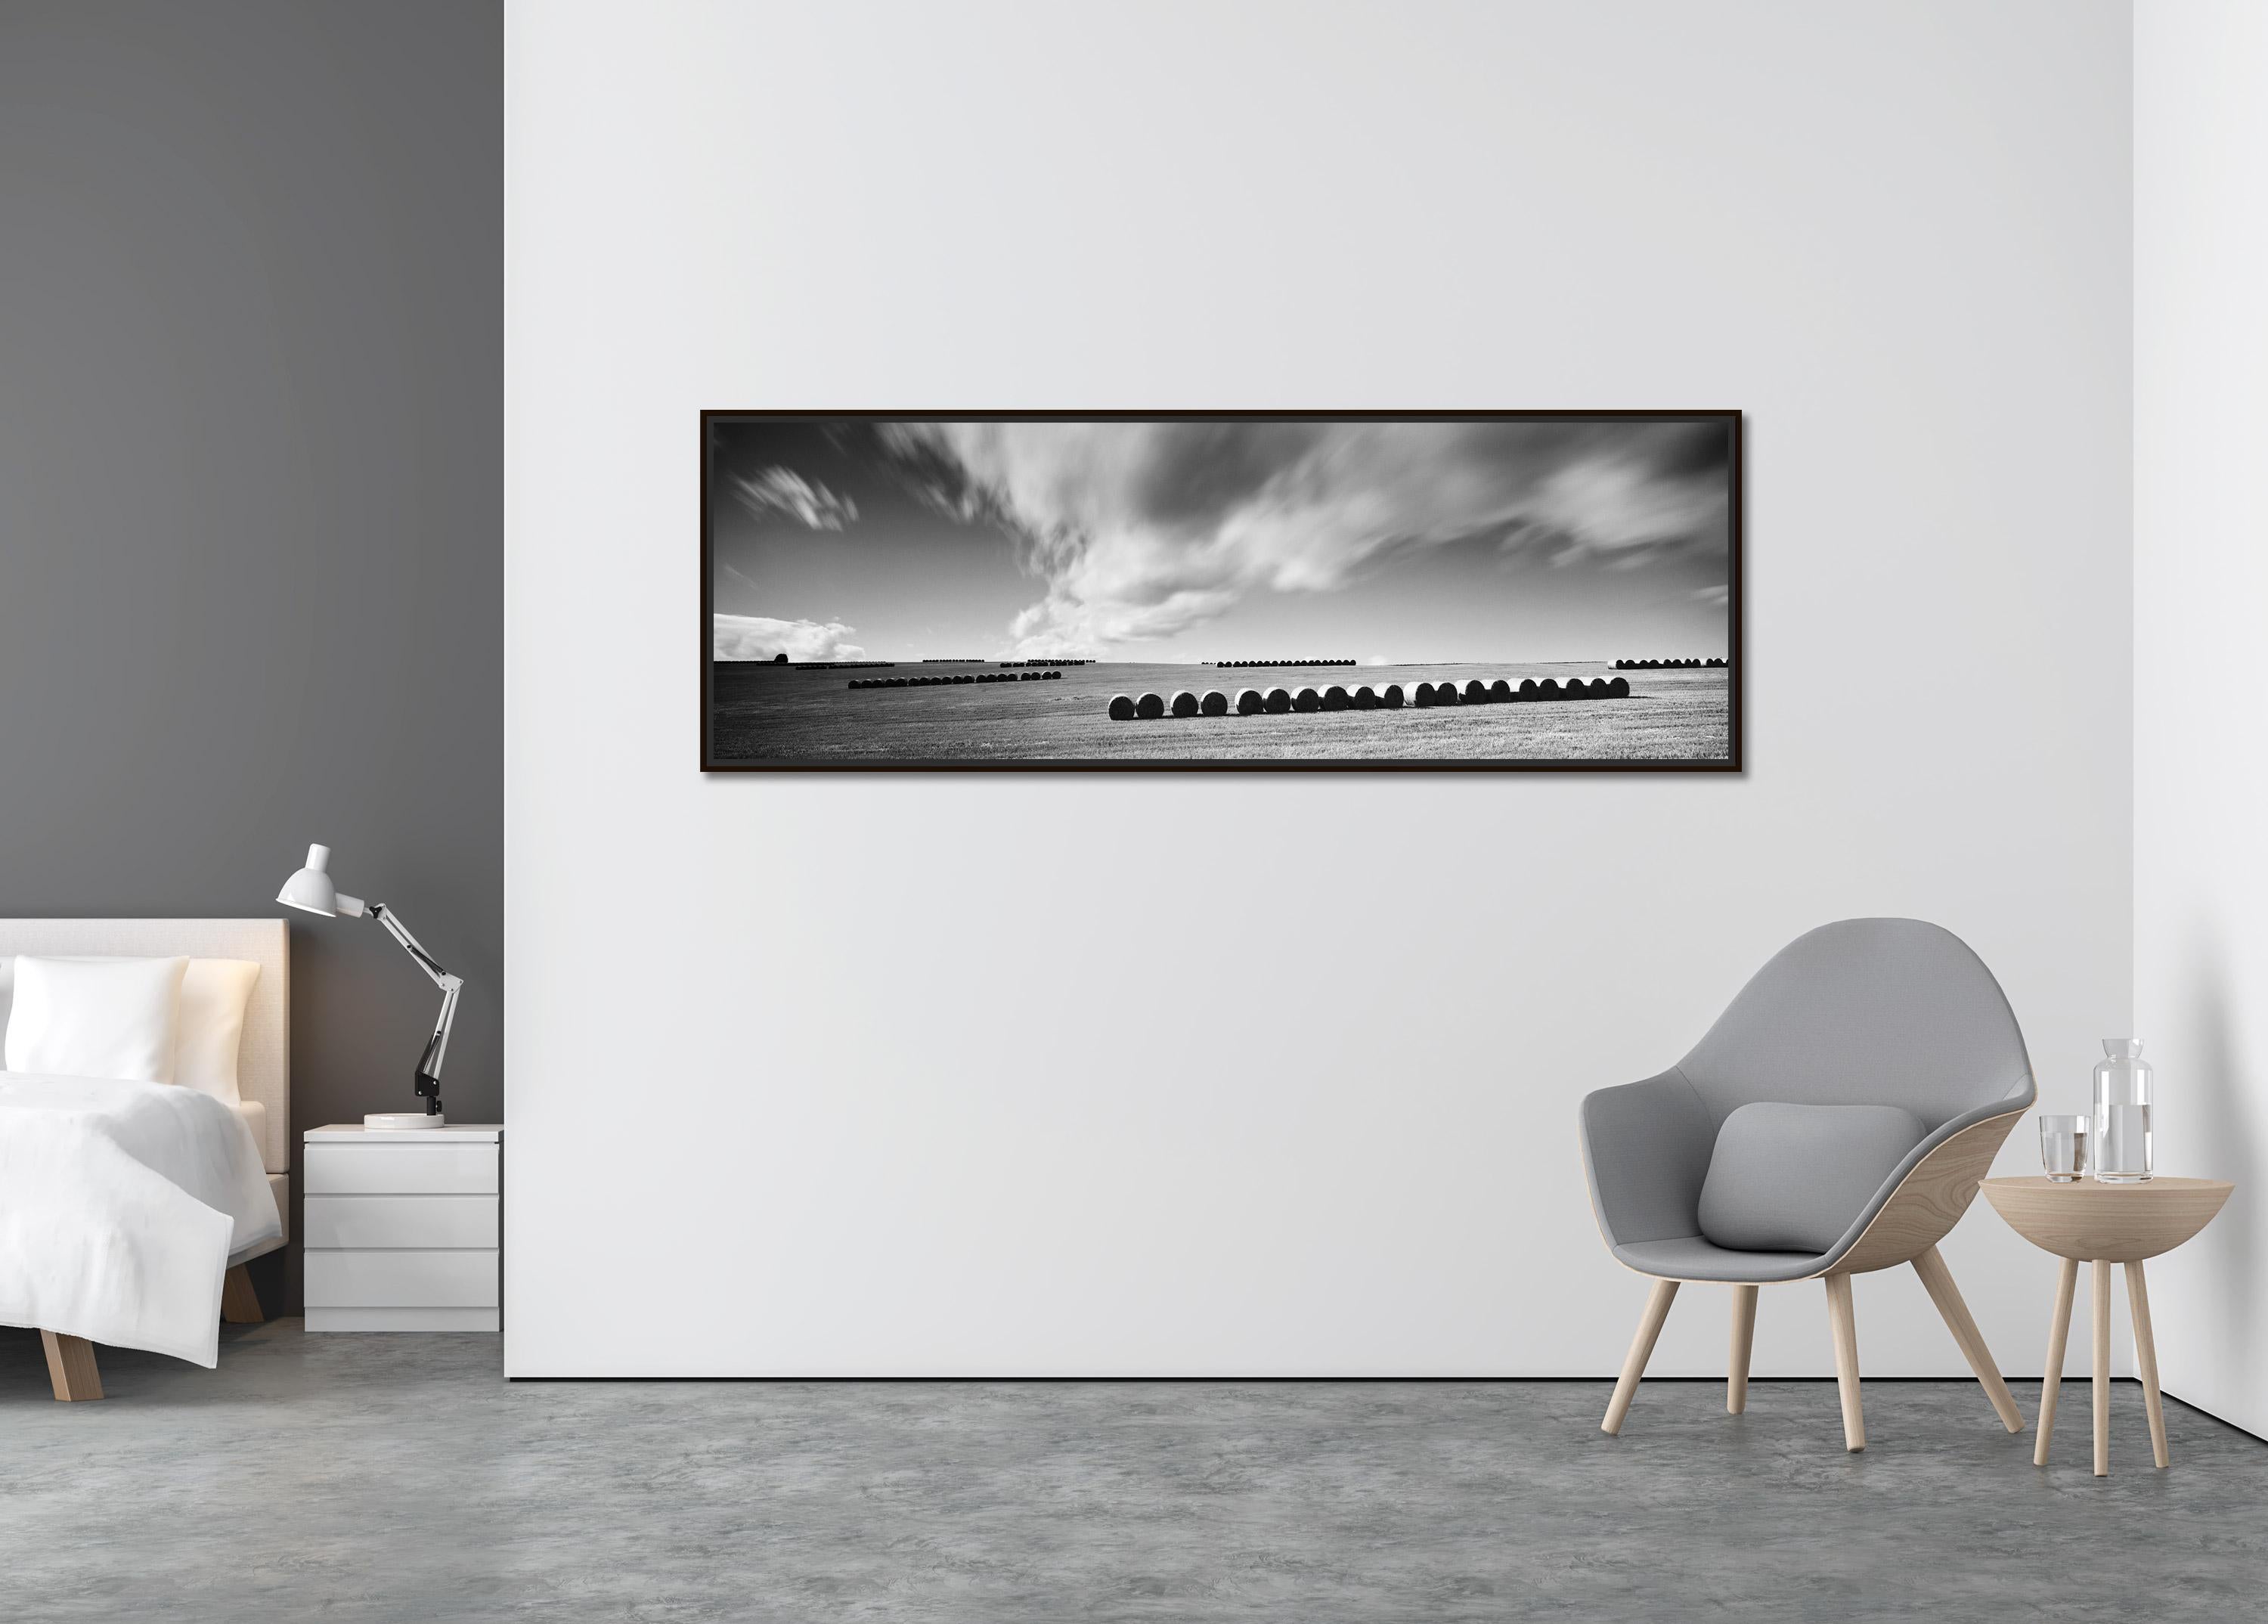 M. Monk Panorama, terres agricoles, bottes de paille, photo de paysage en noir et blanc. - Contemporain Photograph par Gerald Berghammer